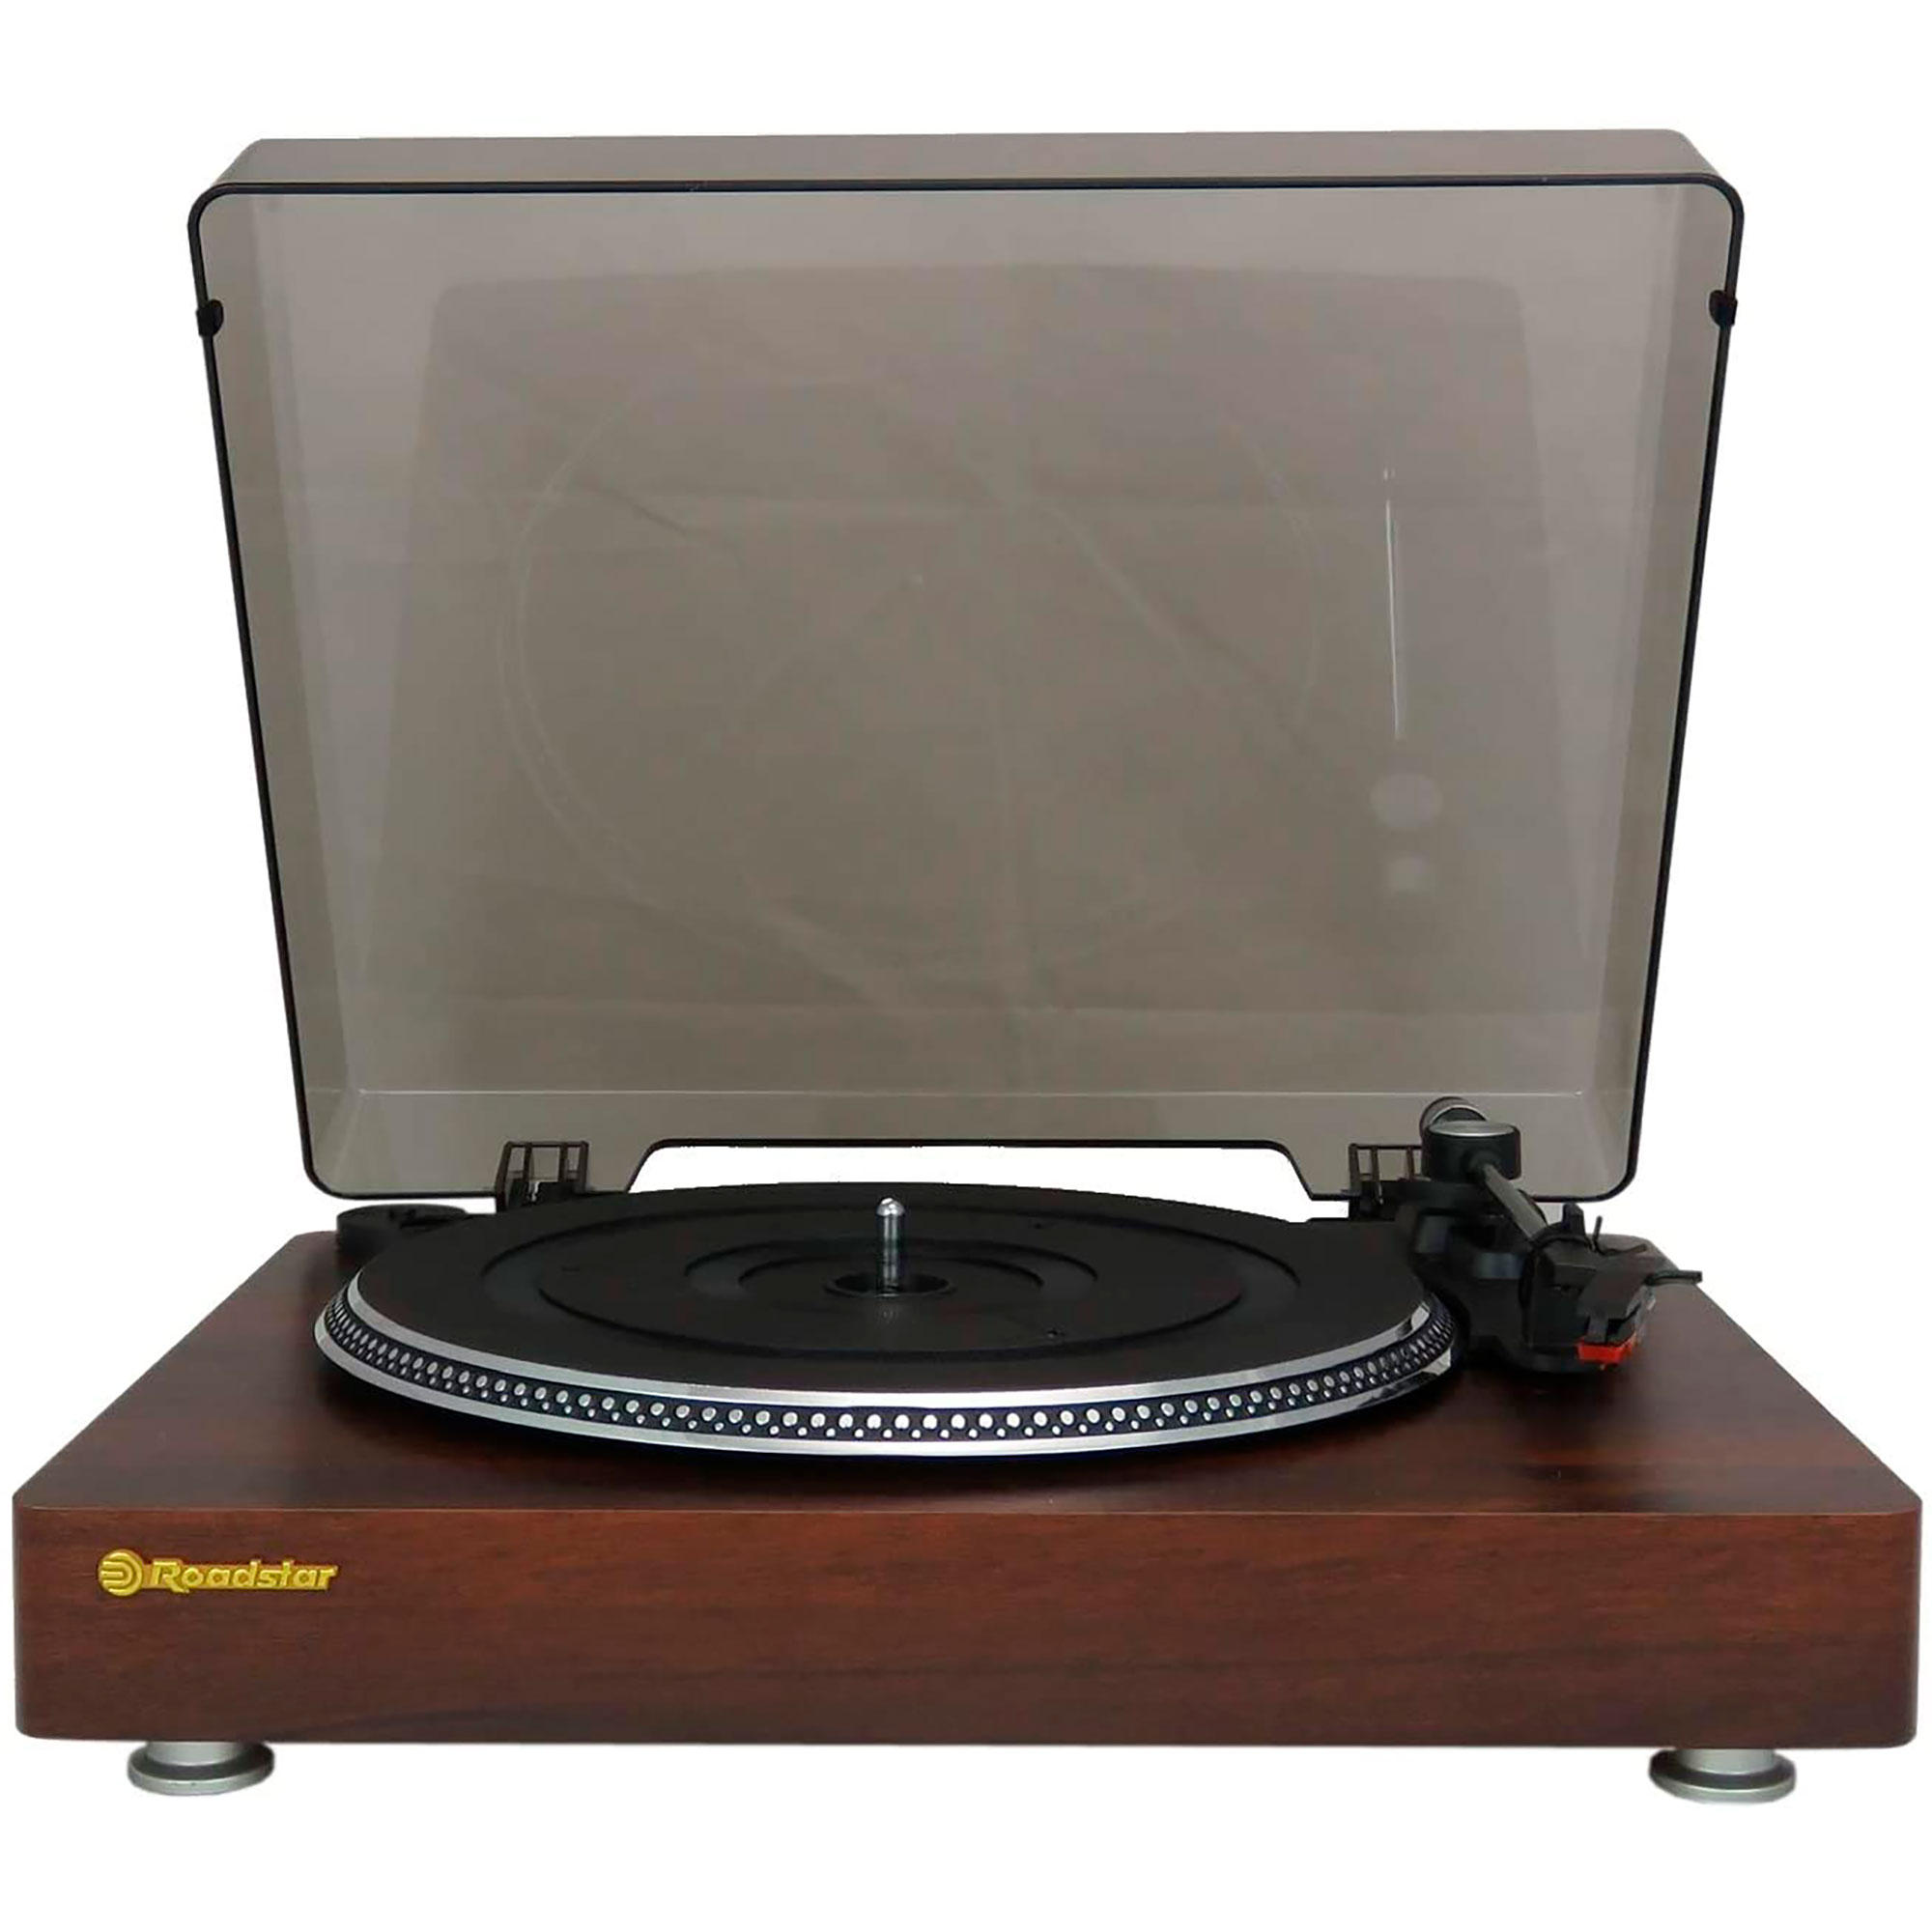 ROADSTAR Retro TT385BTT Vintage Holz Vinyl-Plattenspieler